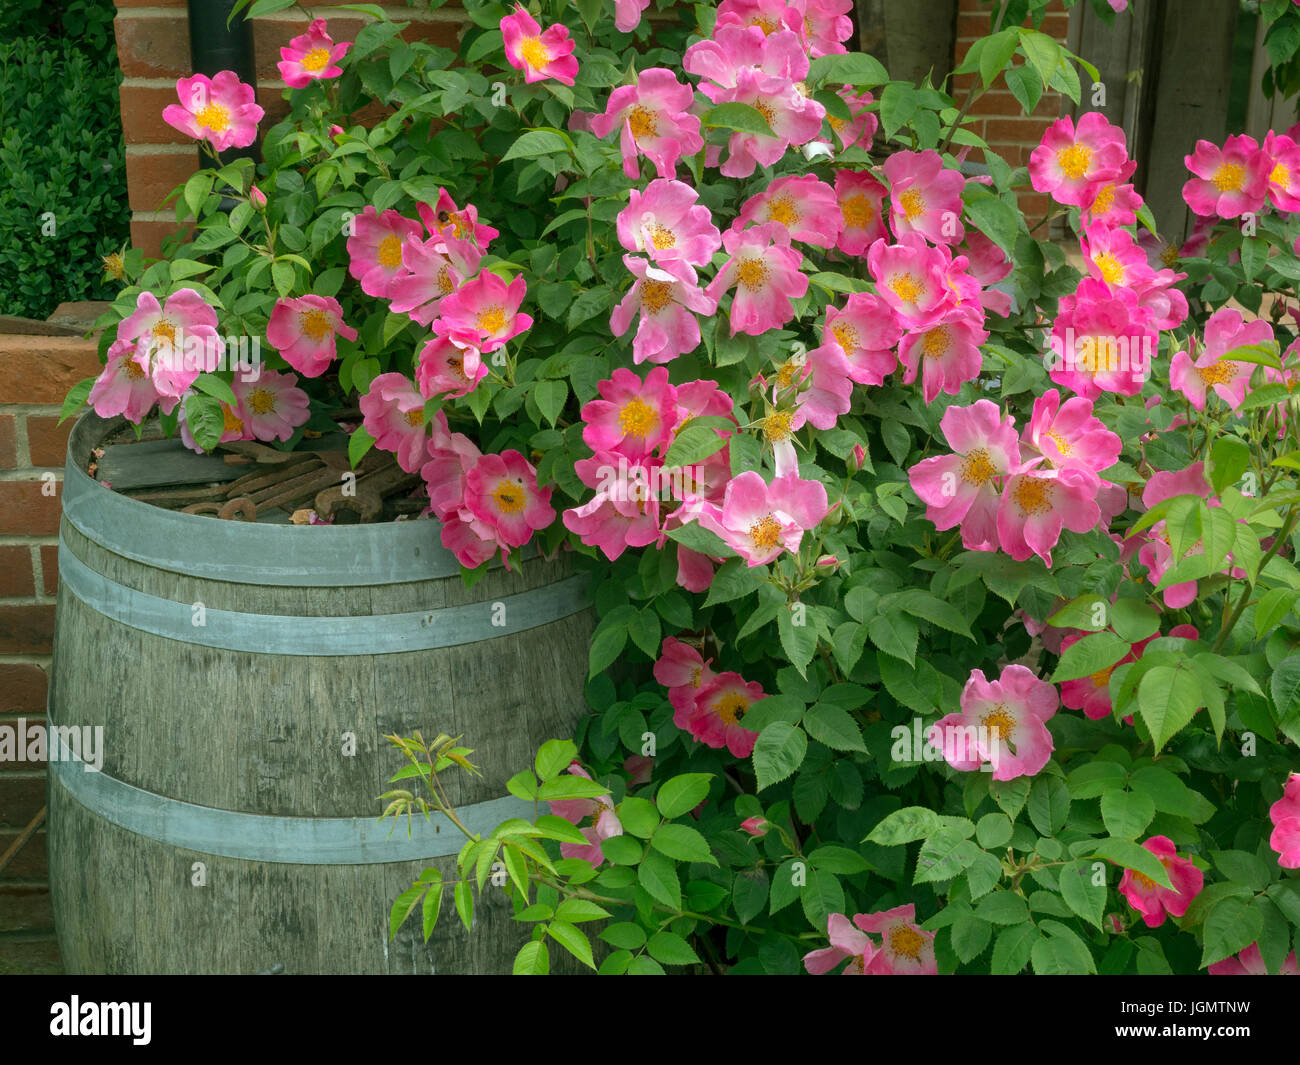 Rosa 'Complicata' Gallica rose  and garden water barrel Stock Photo